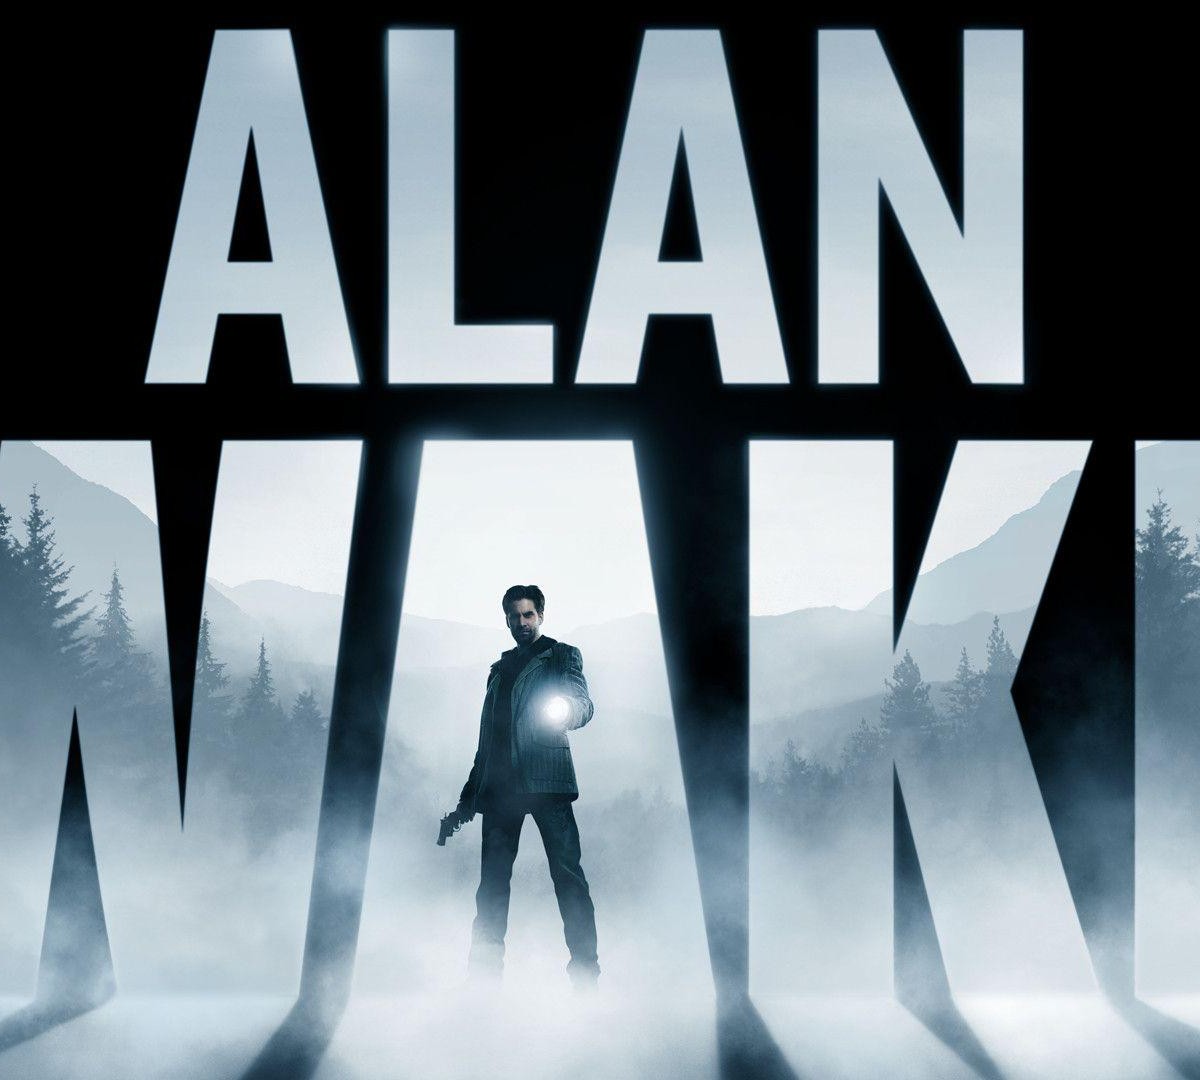 Alan Wake 2: 10 melhores séries de suspense e terror para maratonar depois  de zerar o jogo 